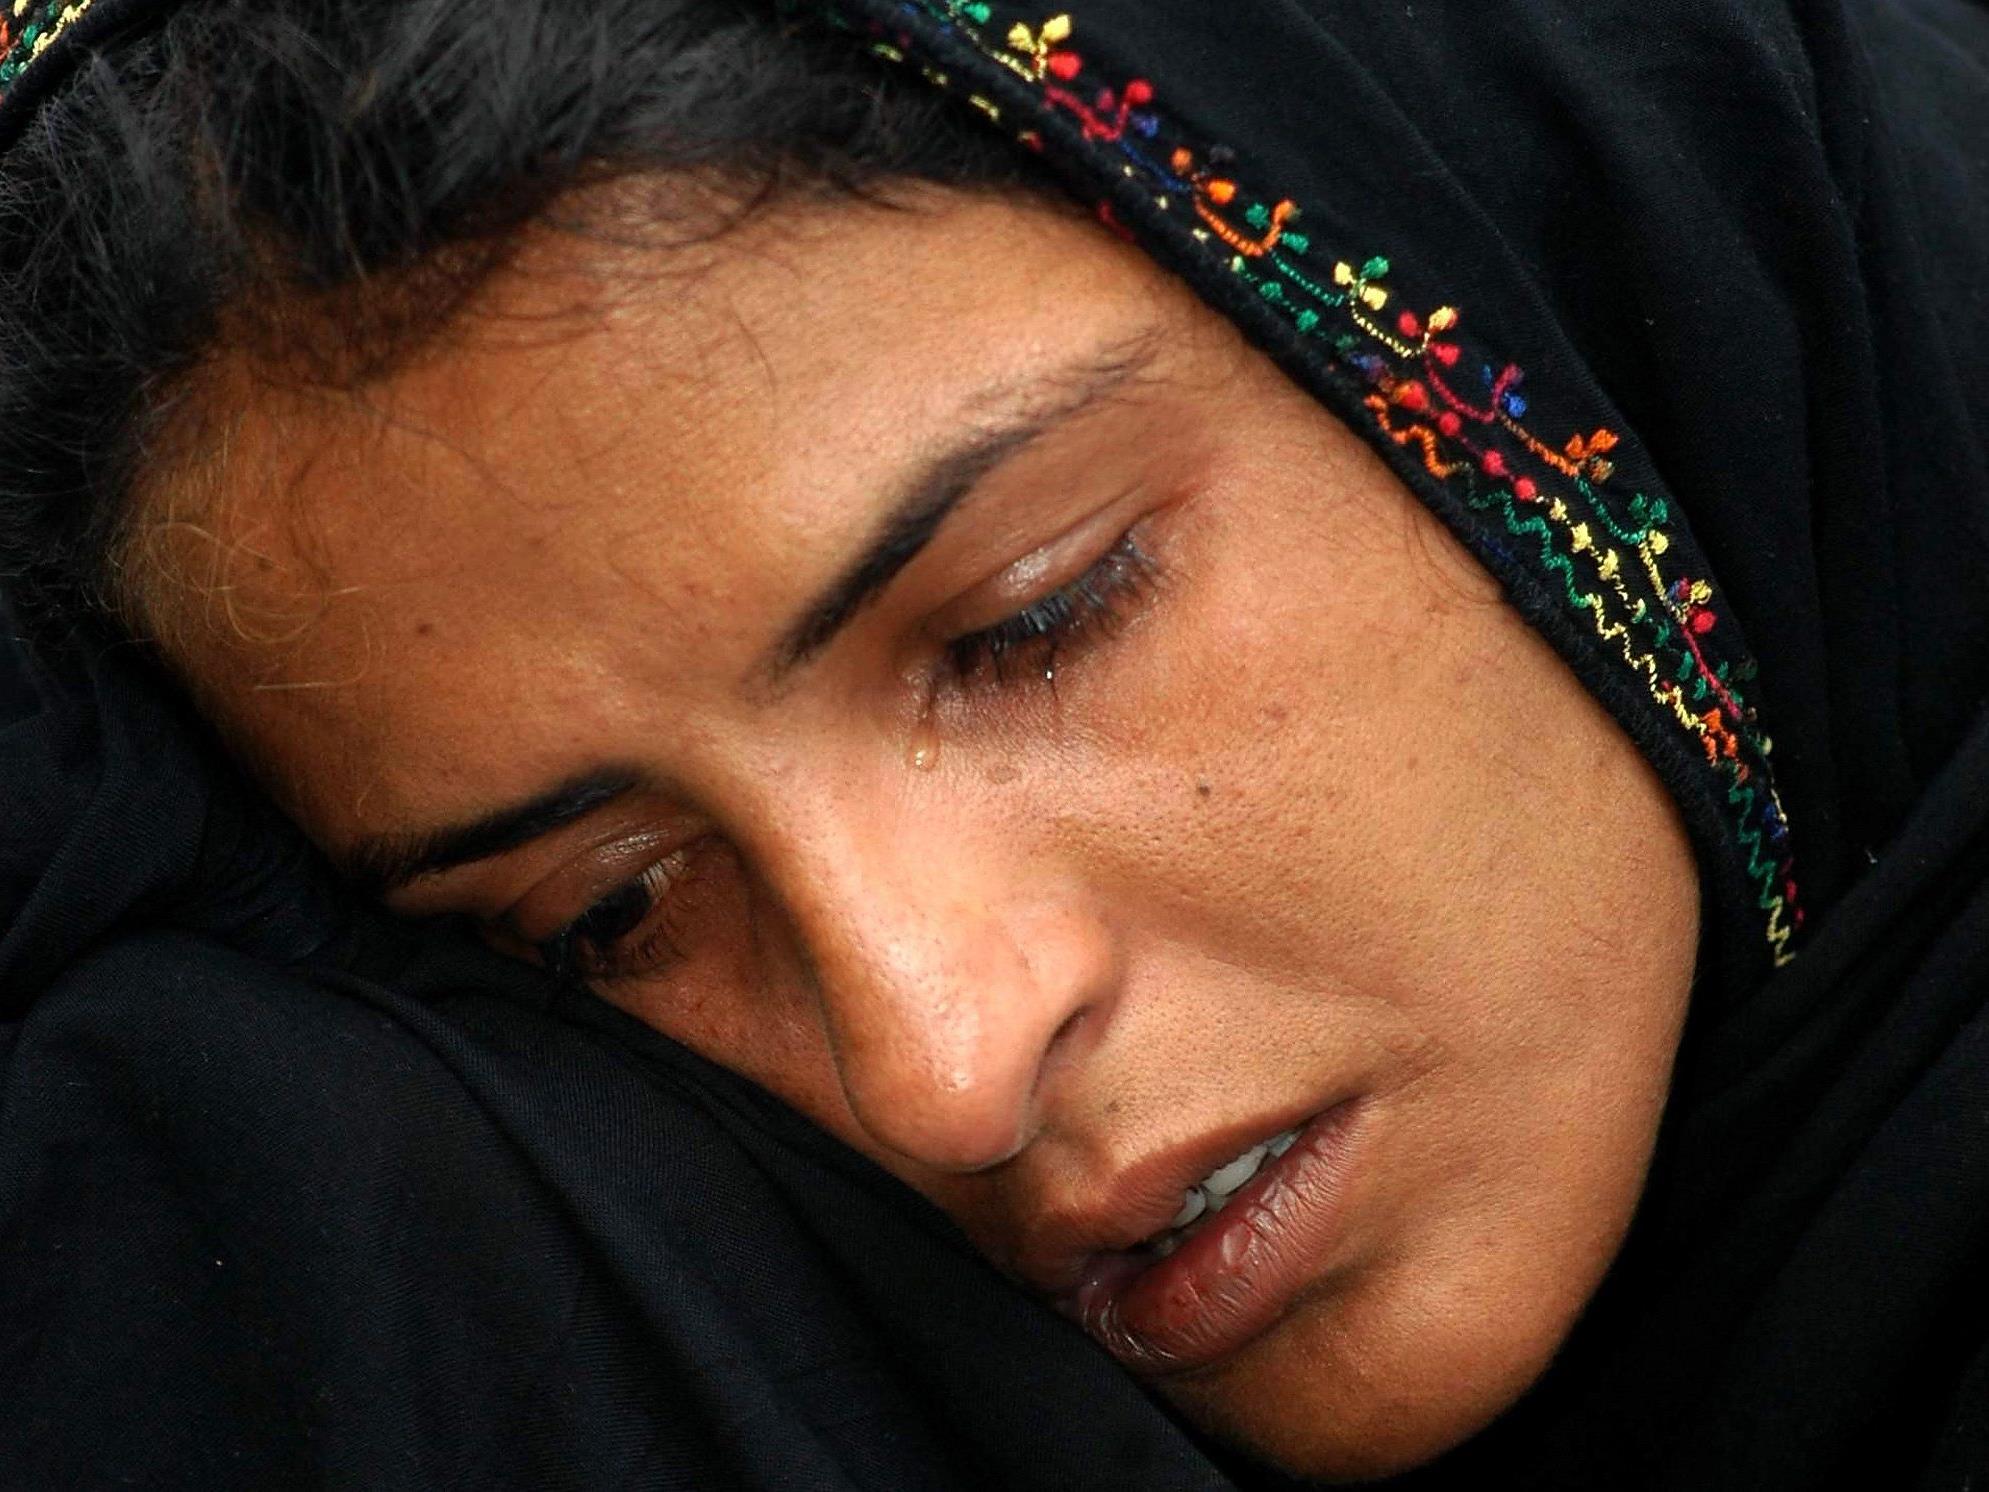 Mukhtar Mai war selbst Opfer einer Vergewaltigung - sie leitet nun eine Organisation für weibliche Gewaltopfer.